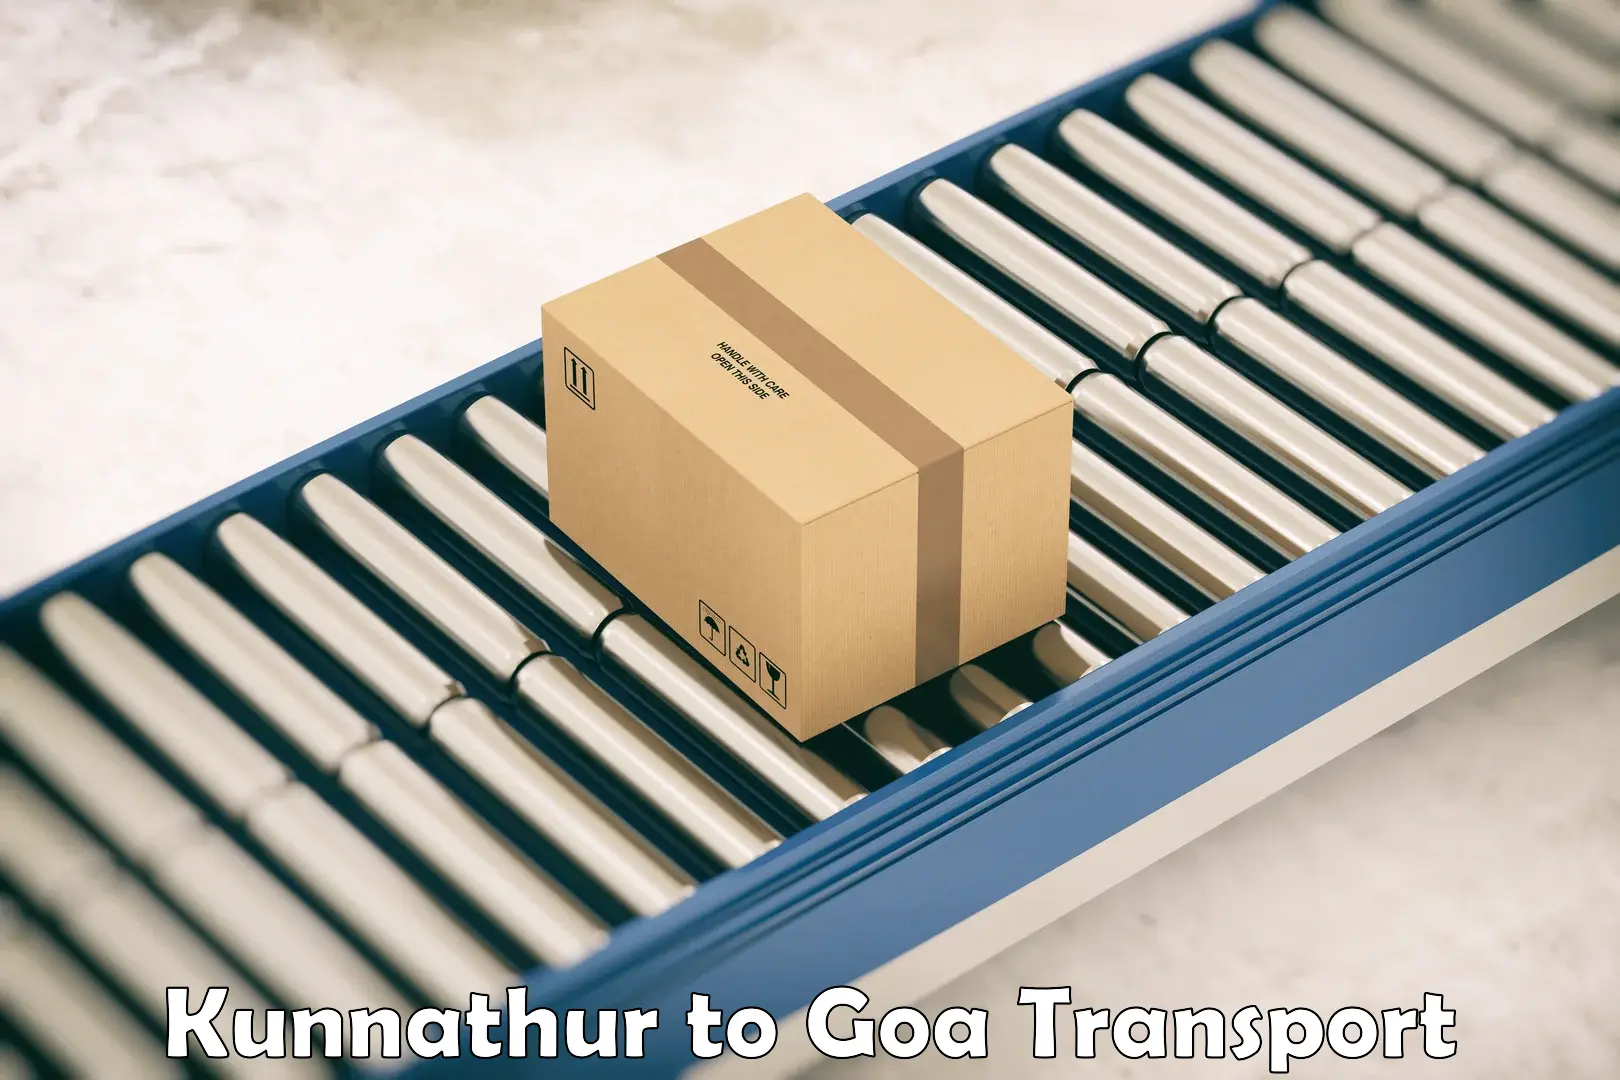 Pick up transport service Kunnathur to IIT Goa